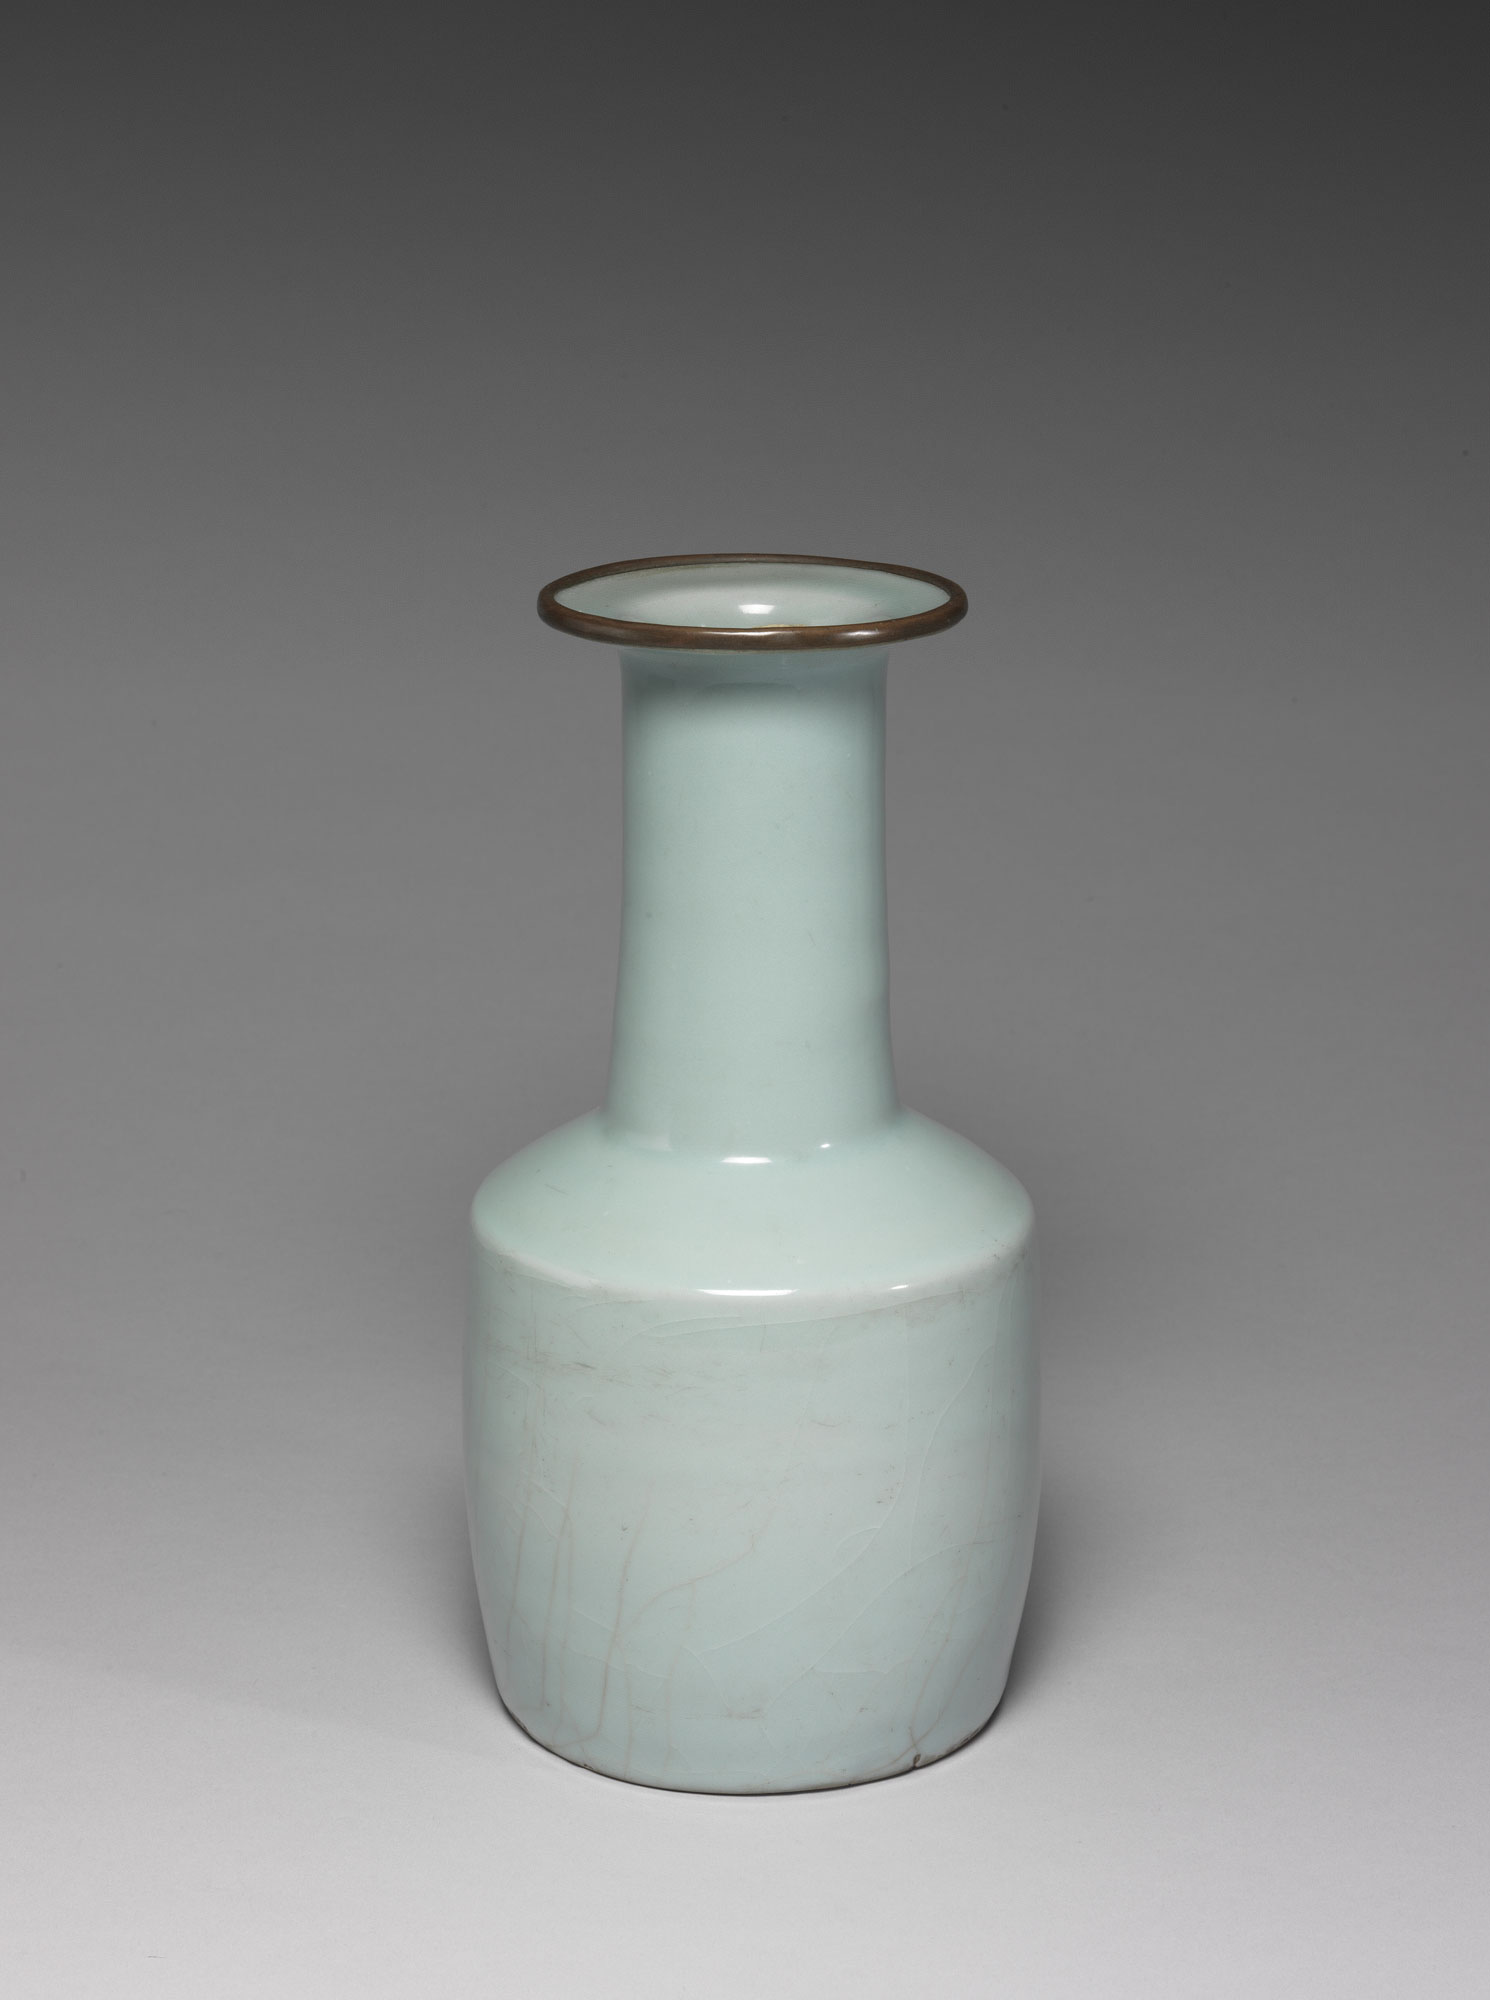 Mallet-shaped Vase in Celadon Glaze